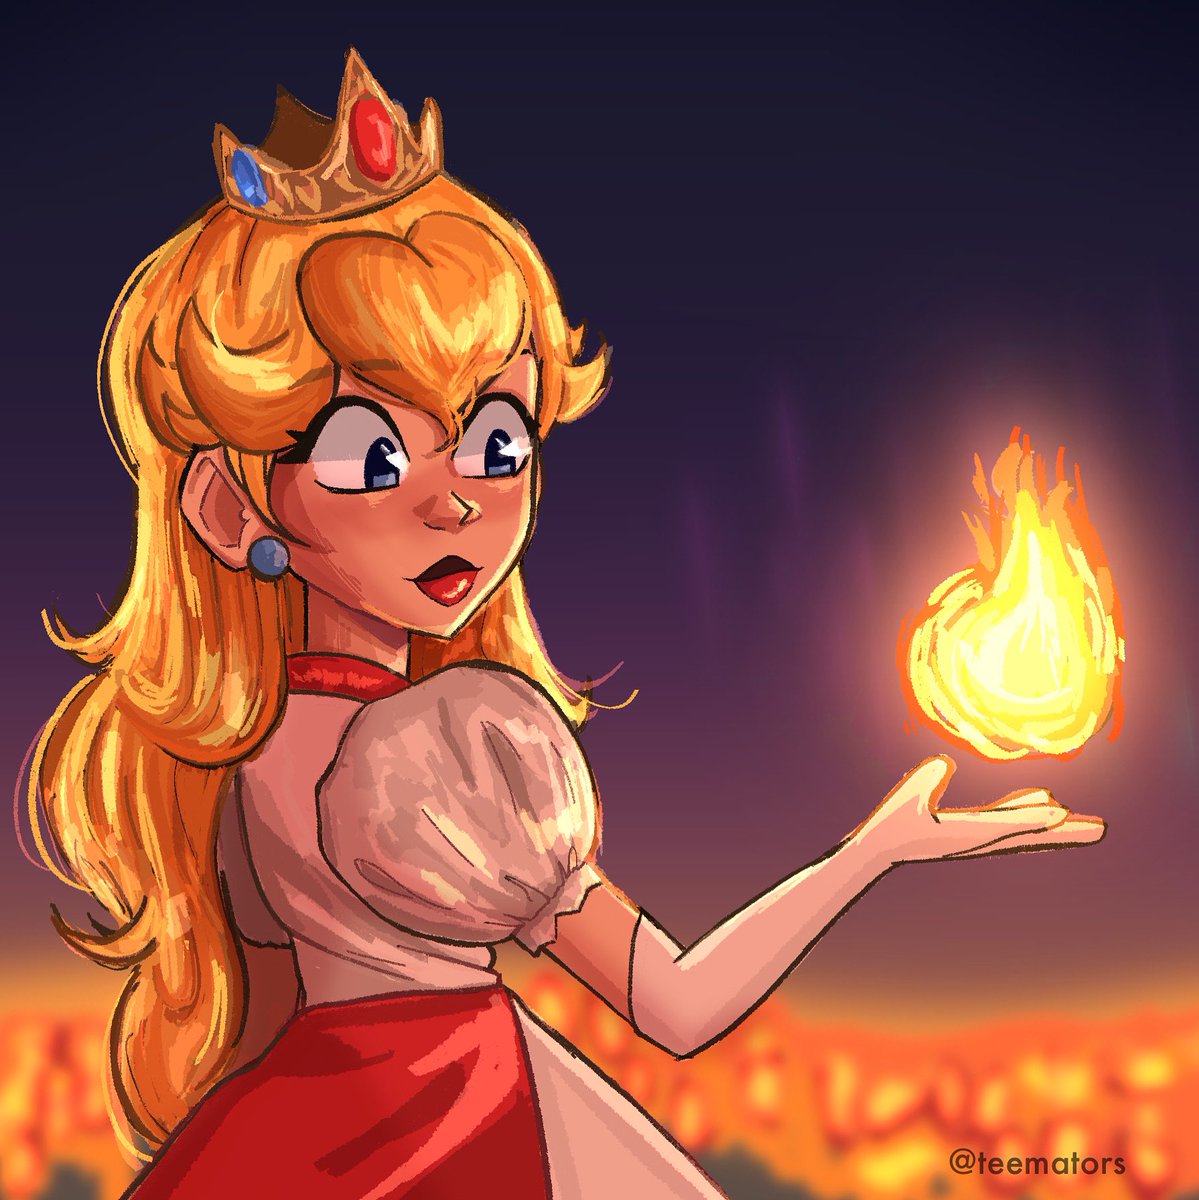 Flame powered Peach🧡
#mariomovie #SuperMarioBrosMovie #PrincessPeach #Nintendo #PrincessPeachFanArt #mariomoviefanart #supermariobros